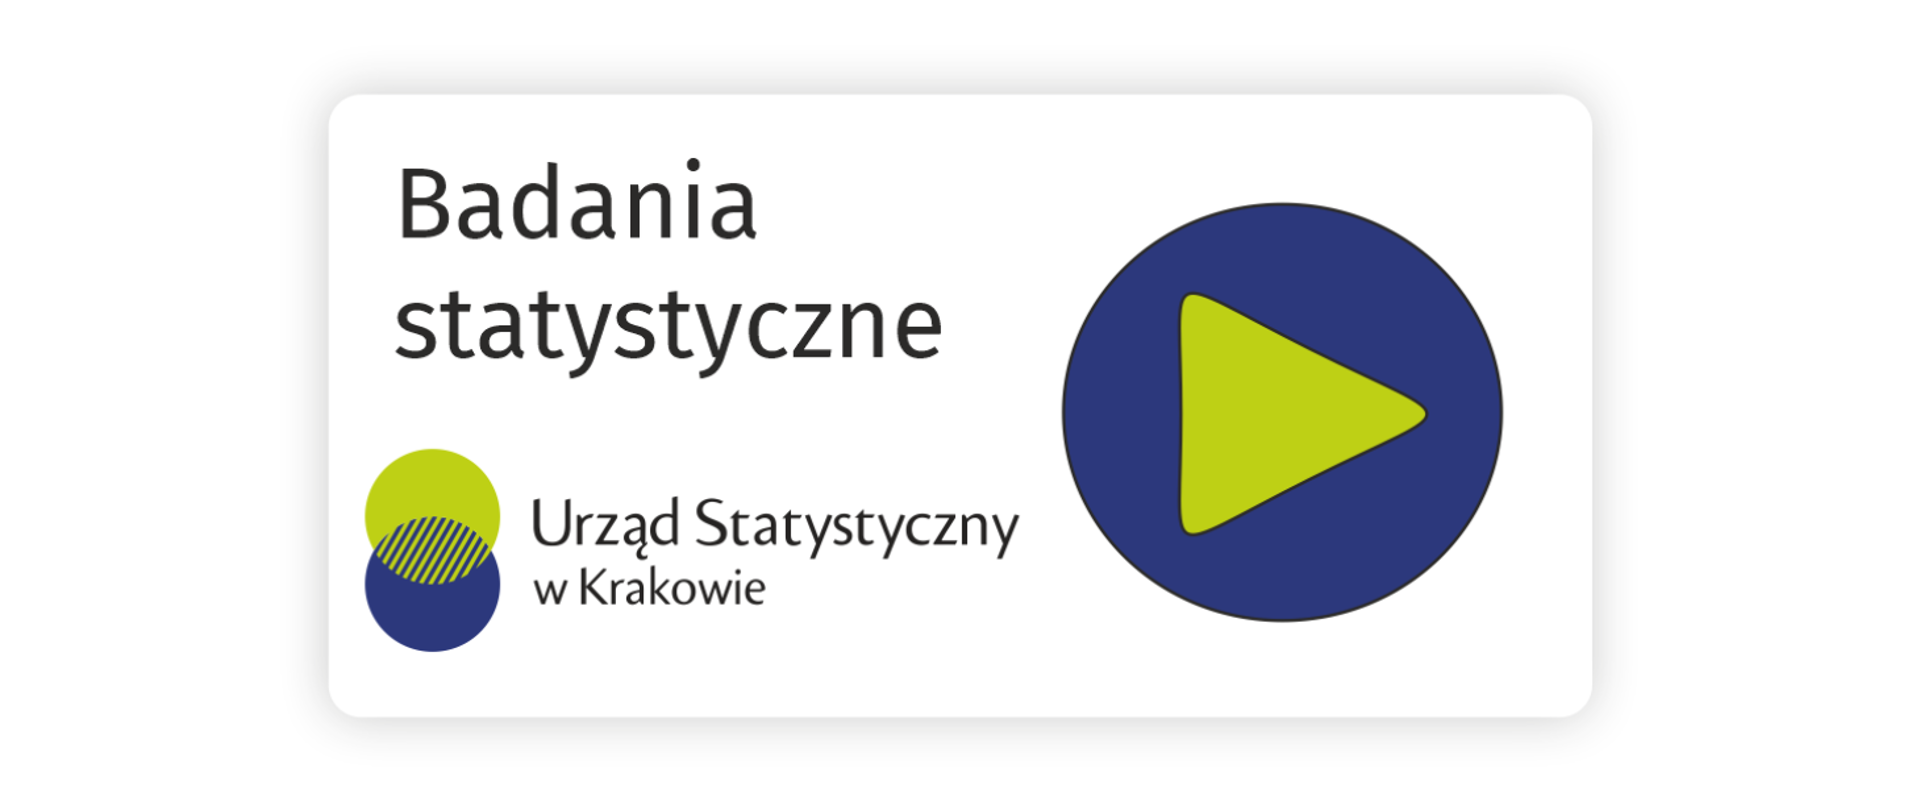 Grafika przedstawia białą kartę z napisem "Badania statystyczne" oraz logo "Urzędu Statystycznego w Krakowie". Po prawej stronie znajduje się duży, niebieski okrąg z żółtym trójkątem w środku, symbolizującym przycisk odtwarzania.
